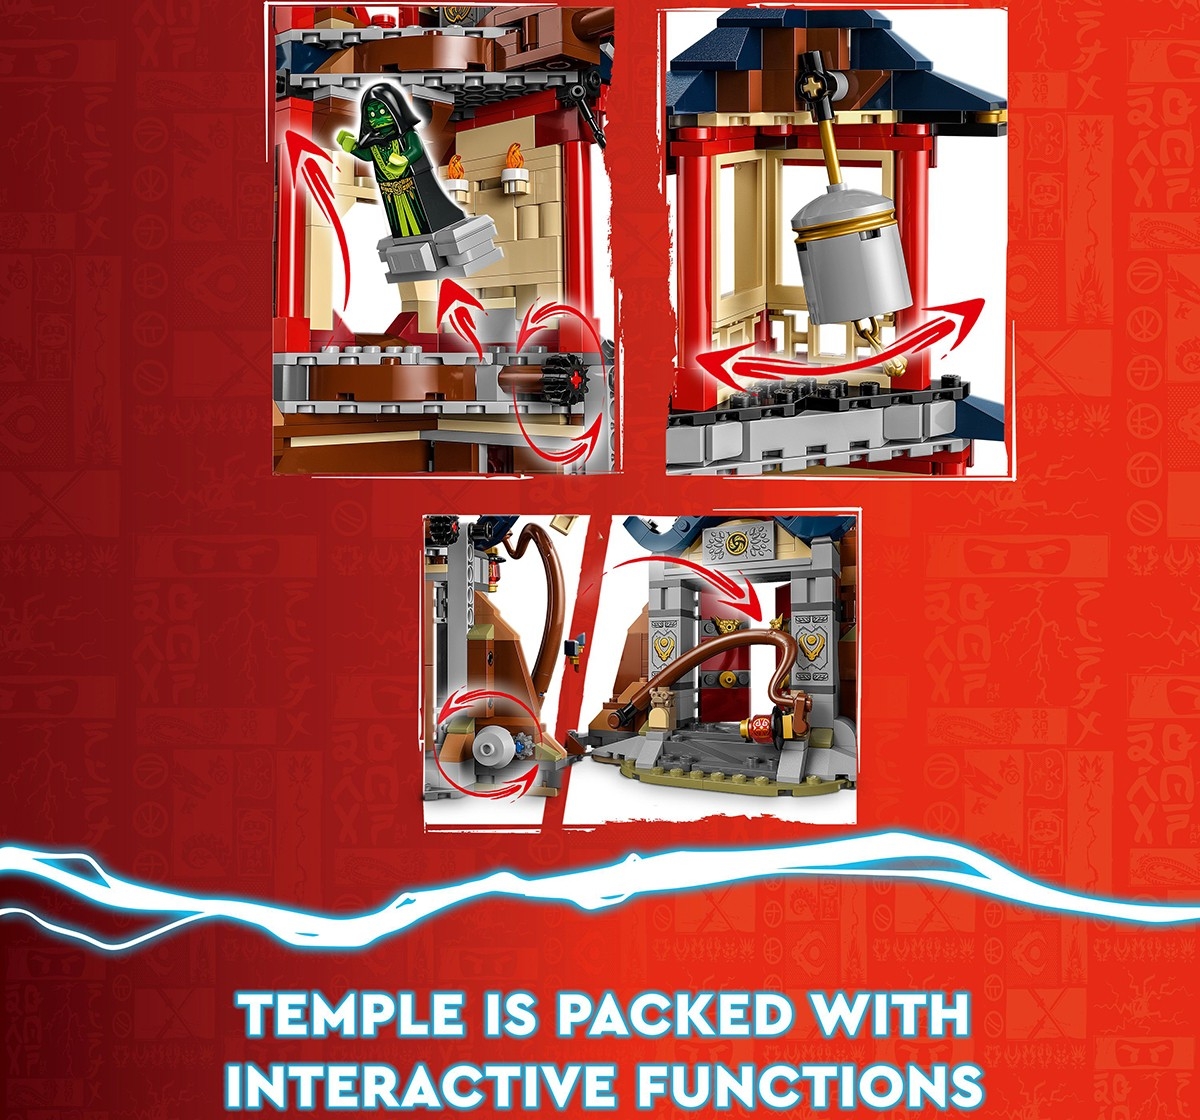 Lego Ninjago Temple Of The Dragon Energy Cores 71795 Building Toy Set (1,029 Pieces), 8Y+